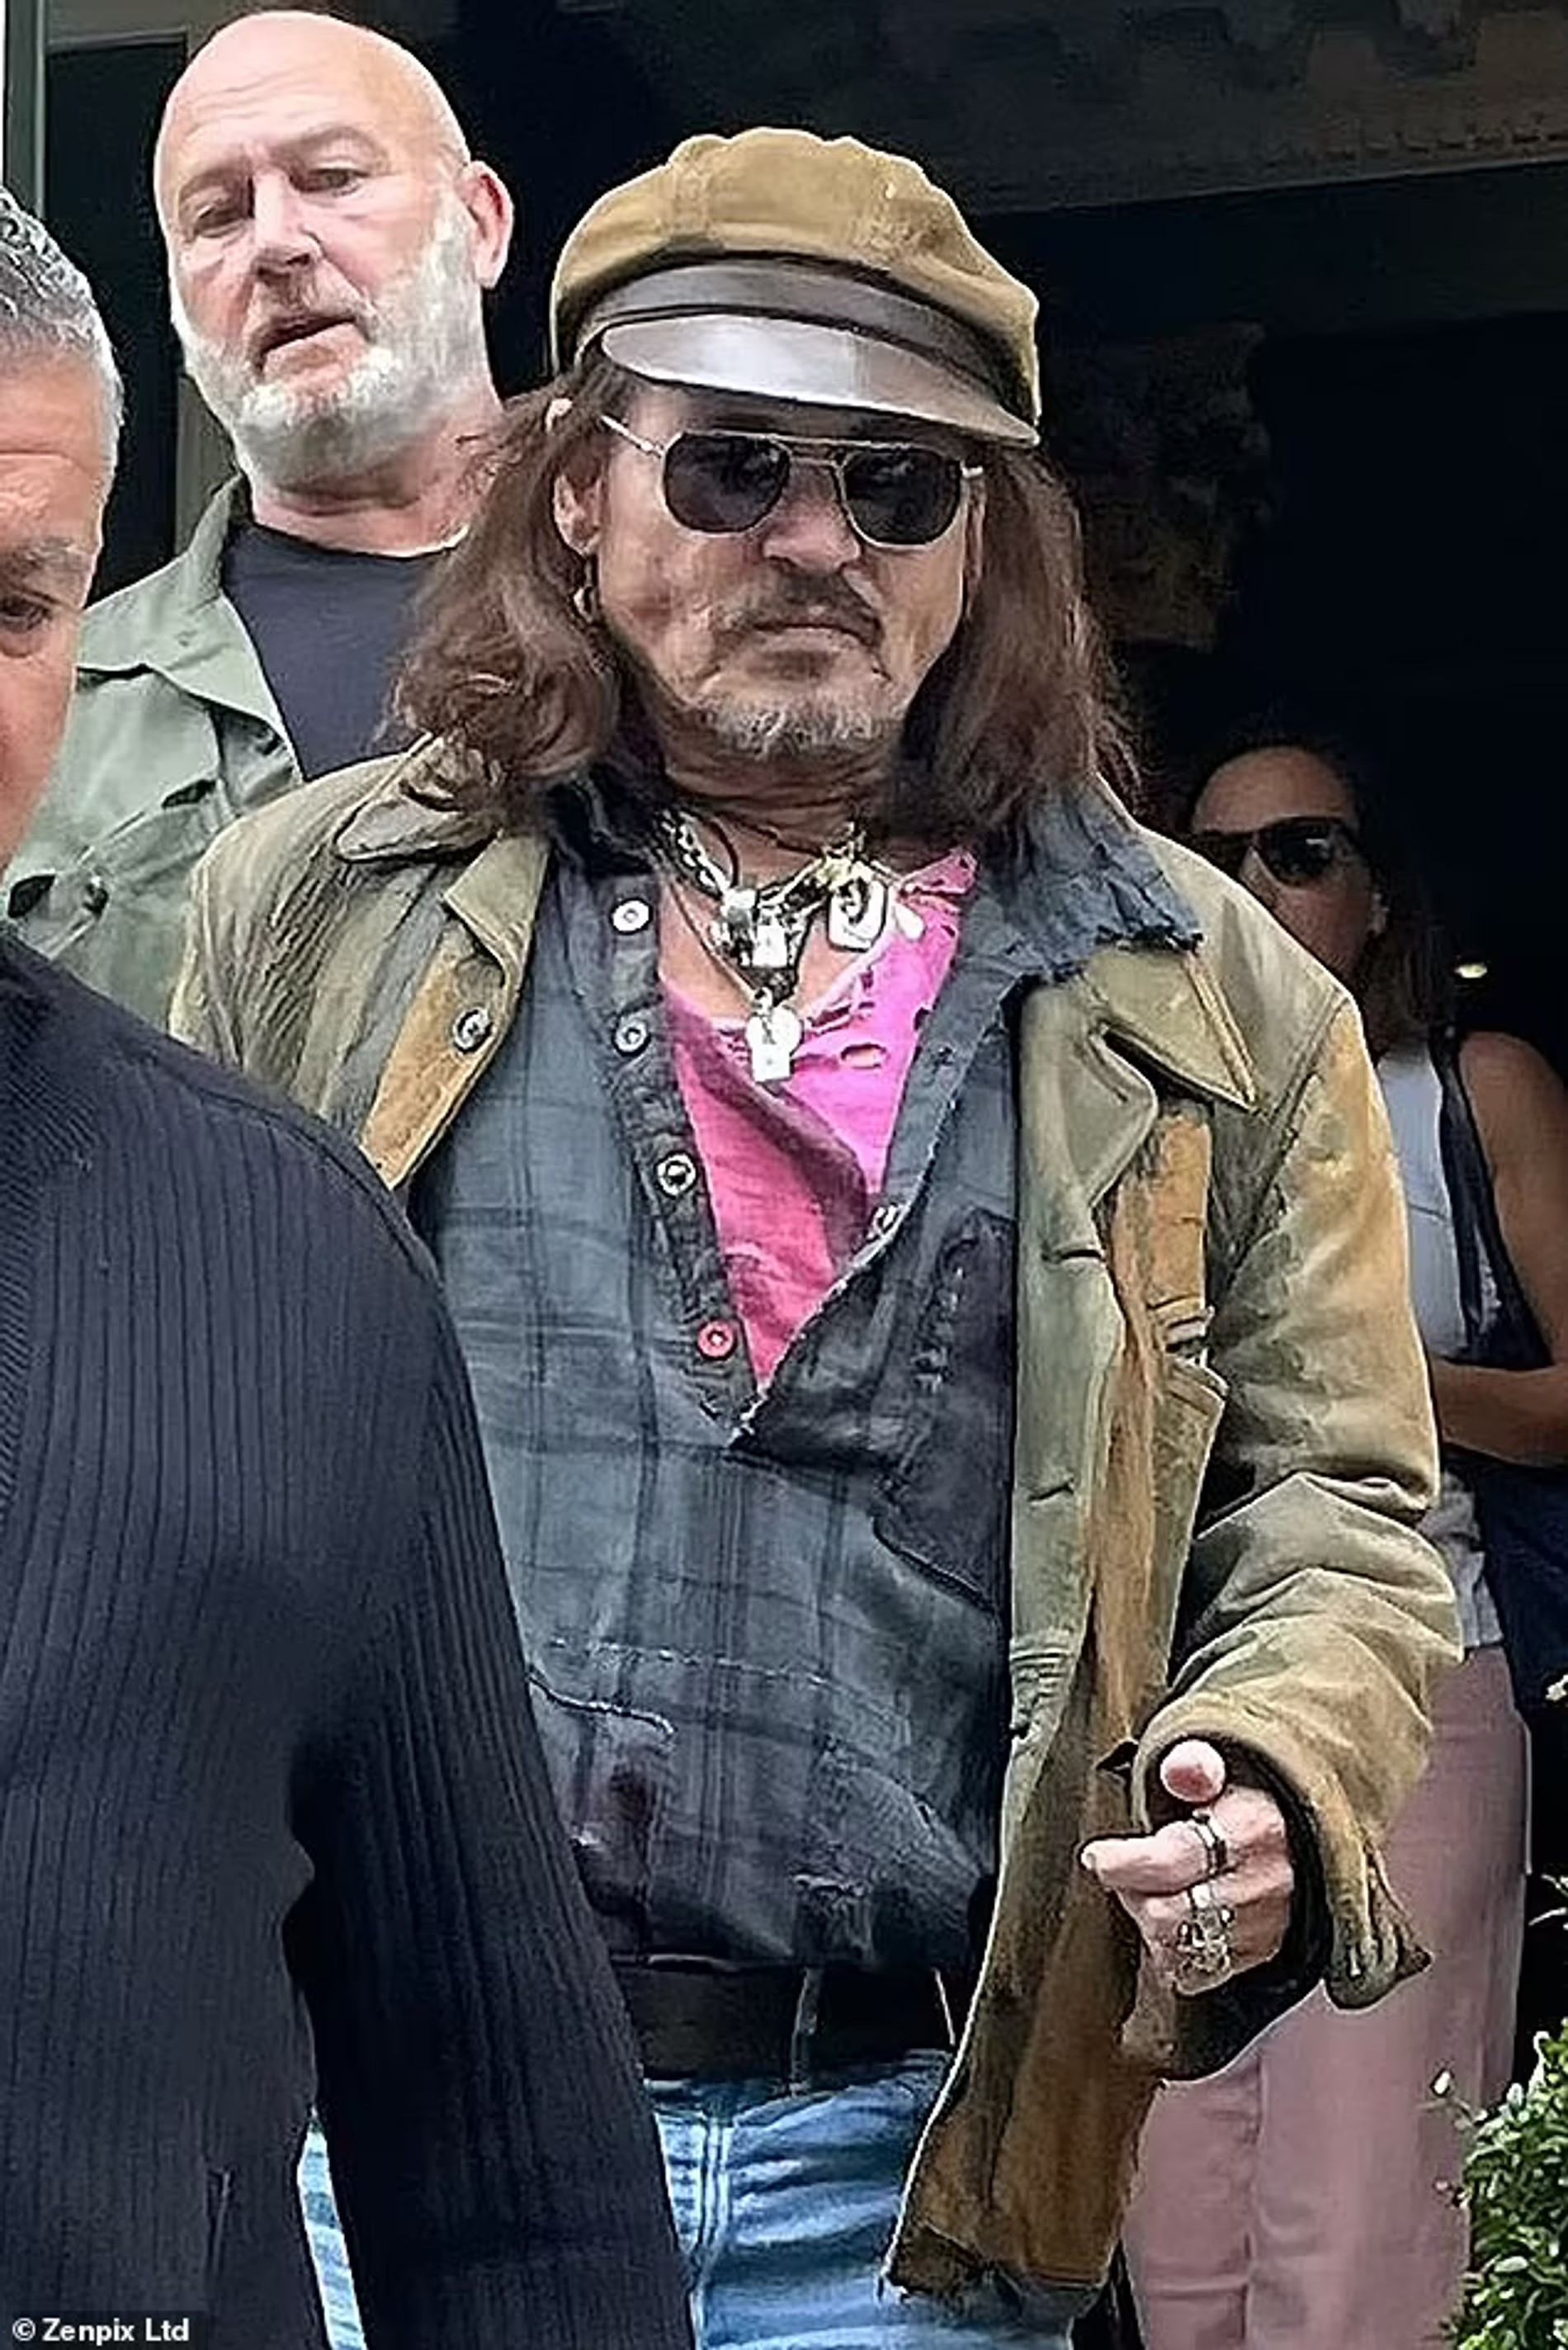 Джонни Депп выходит из отеля в Глазго. Фото: Zenpix Ltd